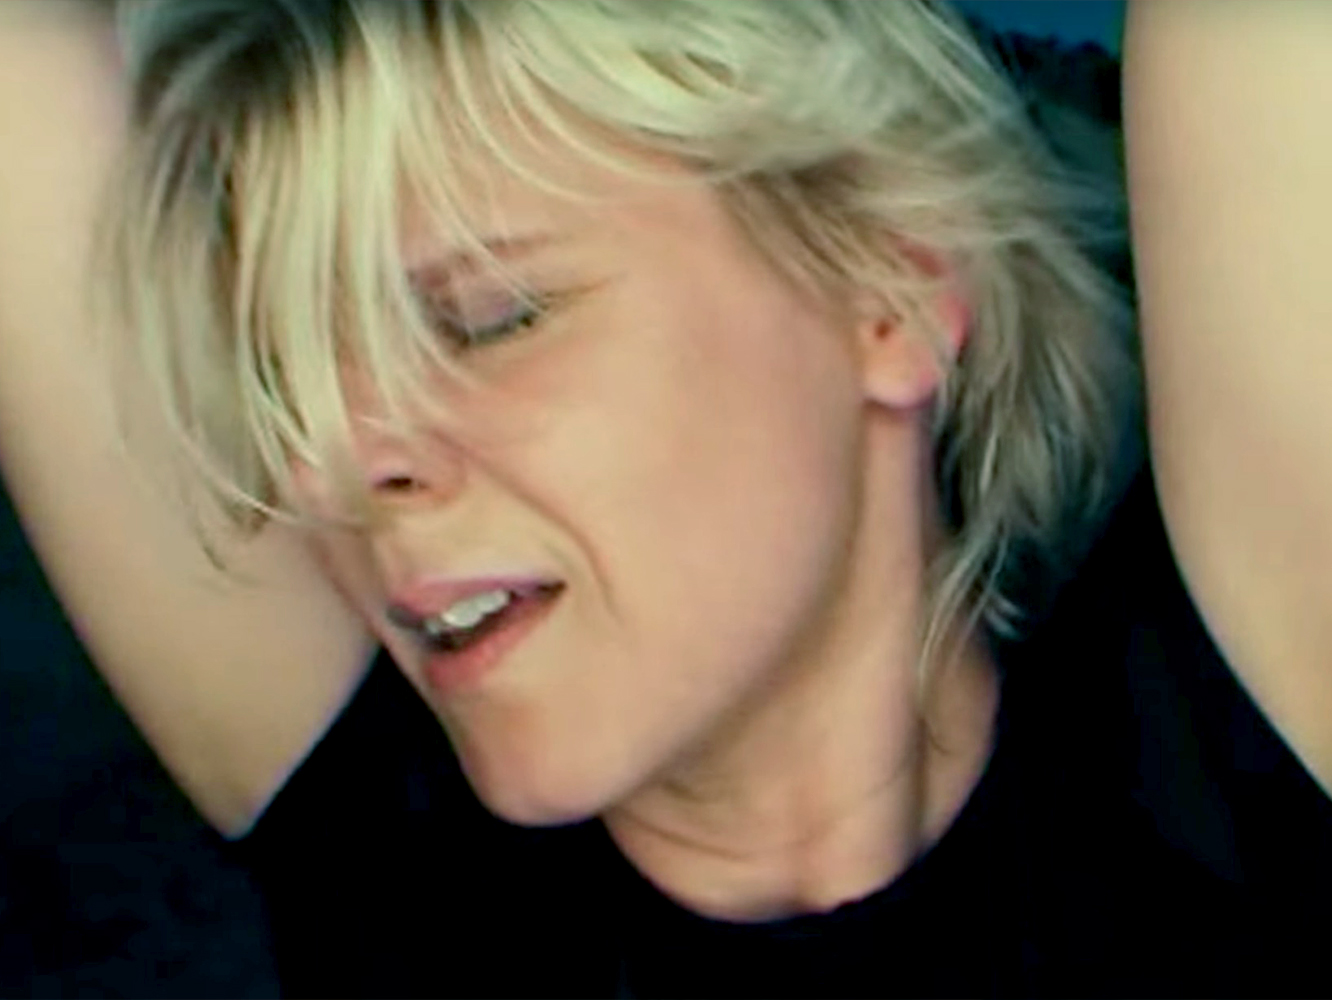  Las aventuras de Robyn en Ibiza para el vídeo de ‘Between The Lines’